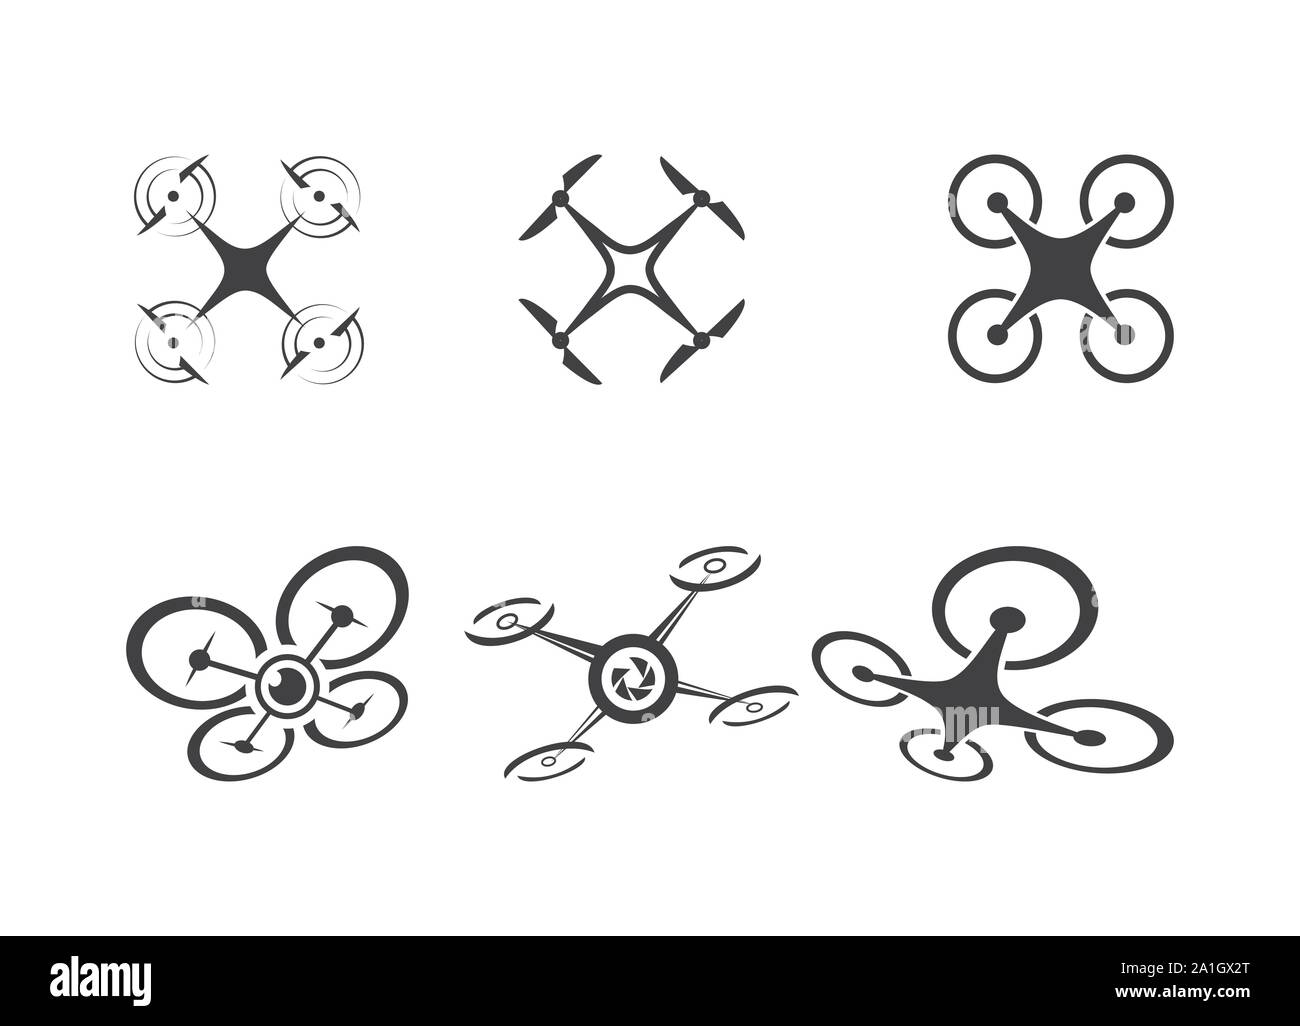 Drone drone modèle logo, logo, Drone icons set. Des modèles de logos de drones volants, modèle de conception de logo Photo Drone drone, vecteur logo design simple, Illustration de Vecteur